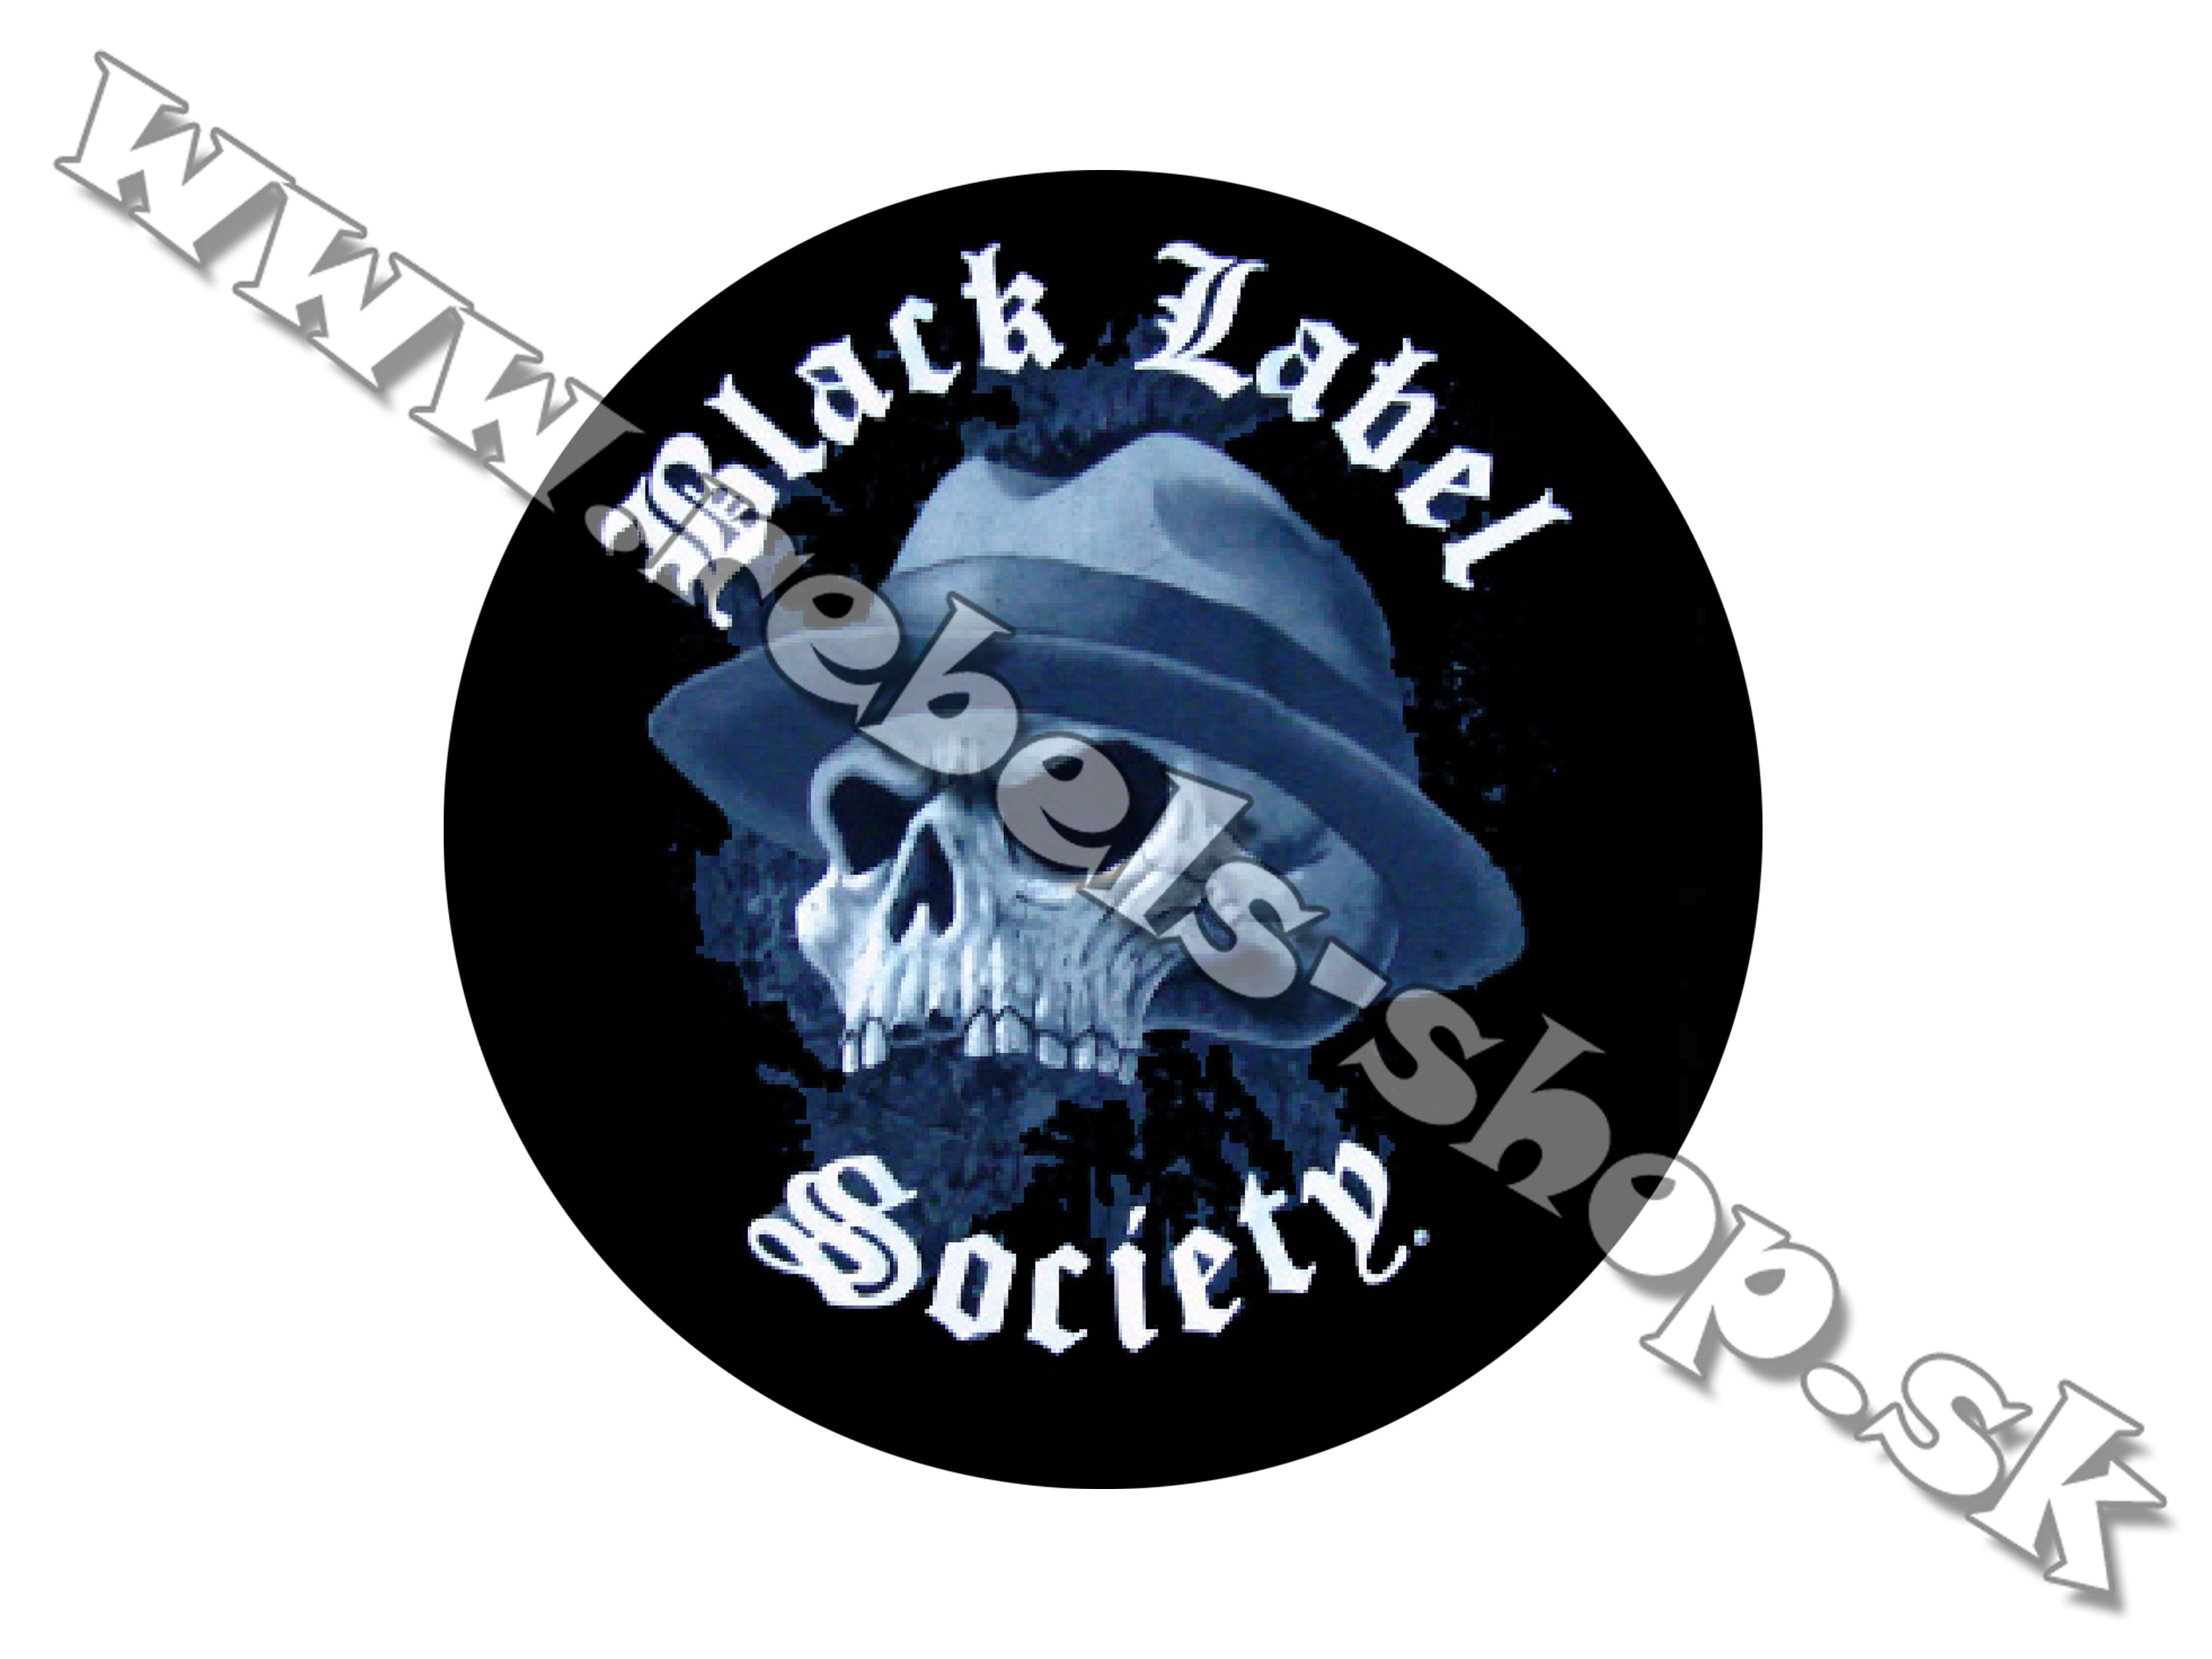 Odznak "Black Label Society"